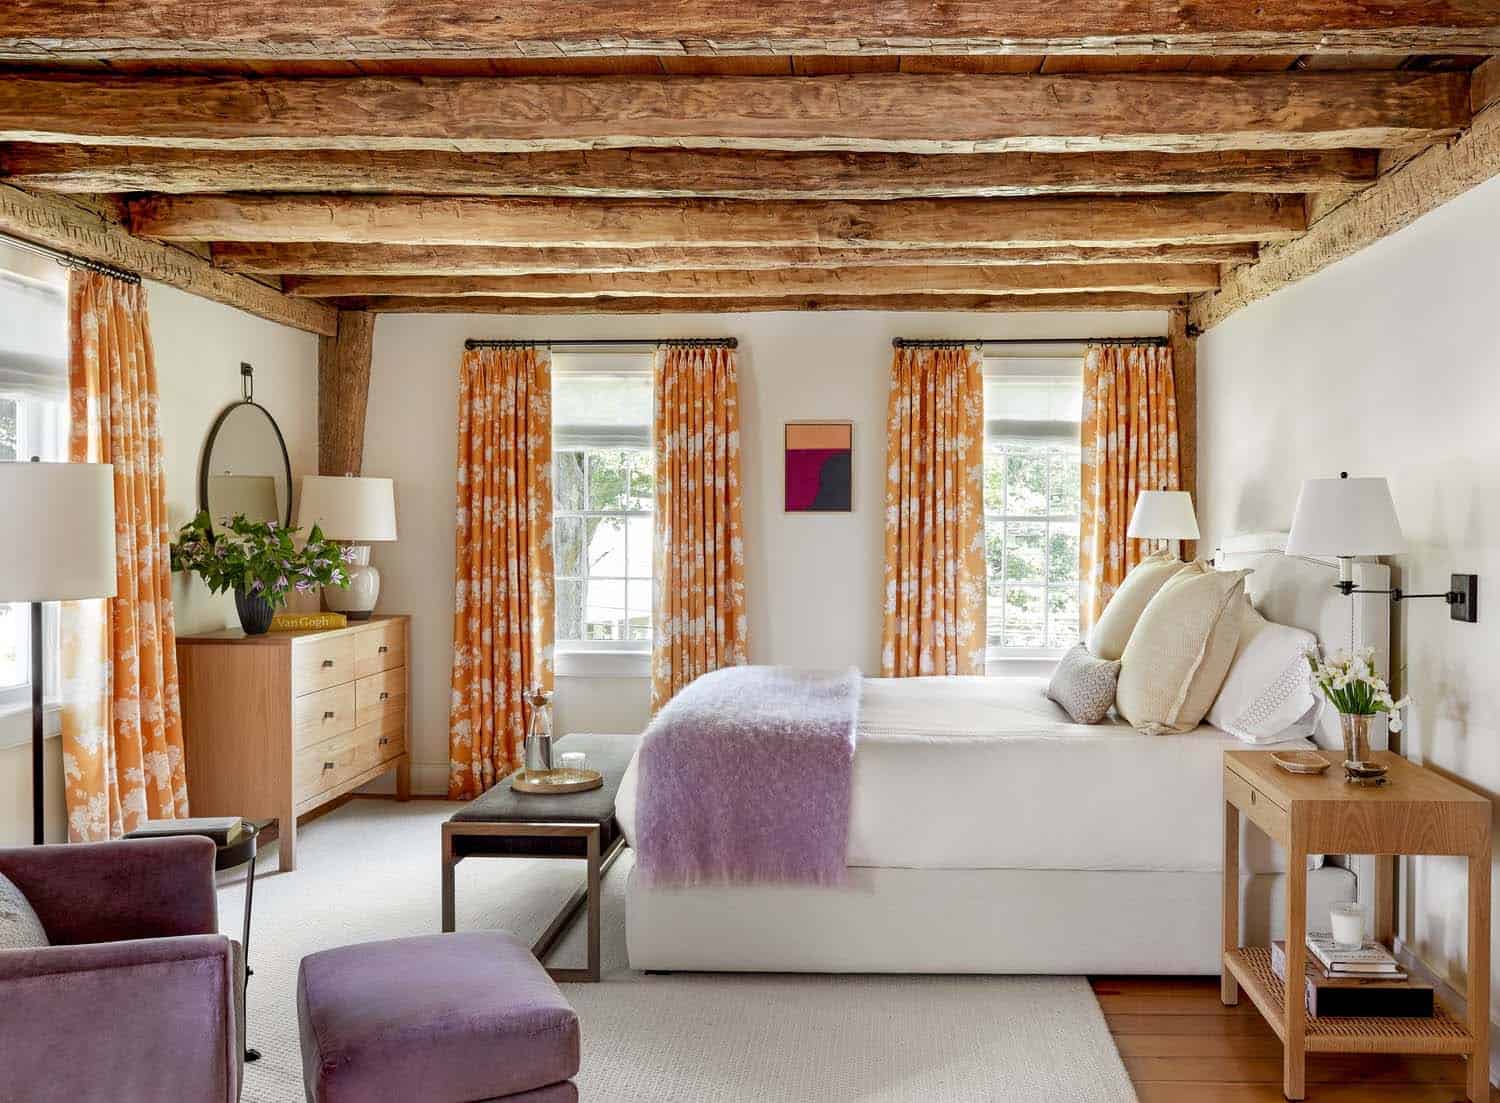 rustic modern bedroom with wood ceiling beams